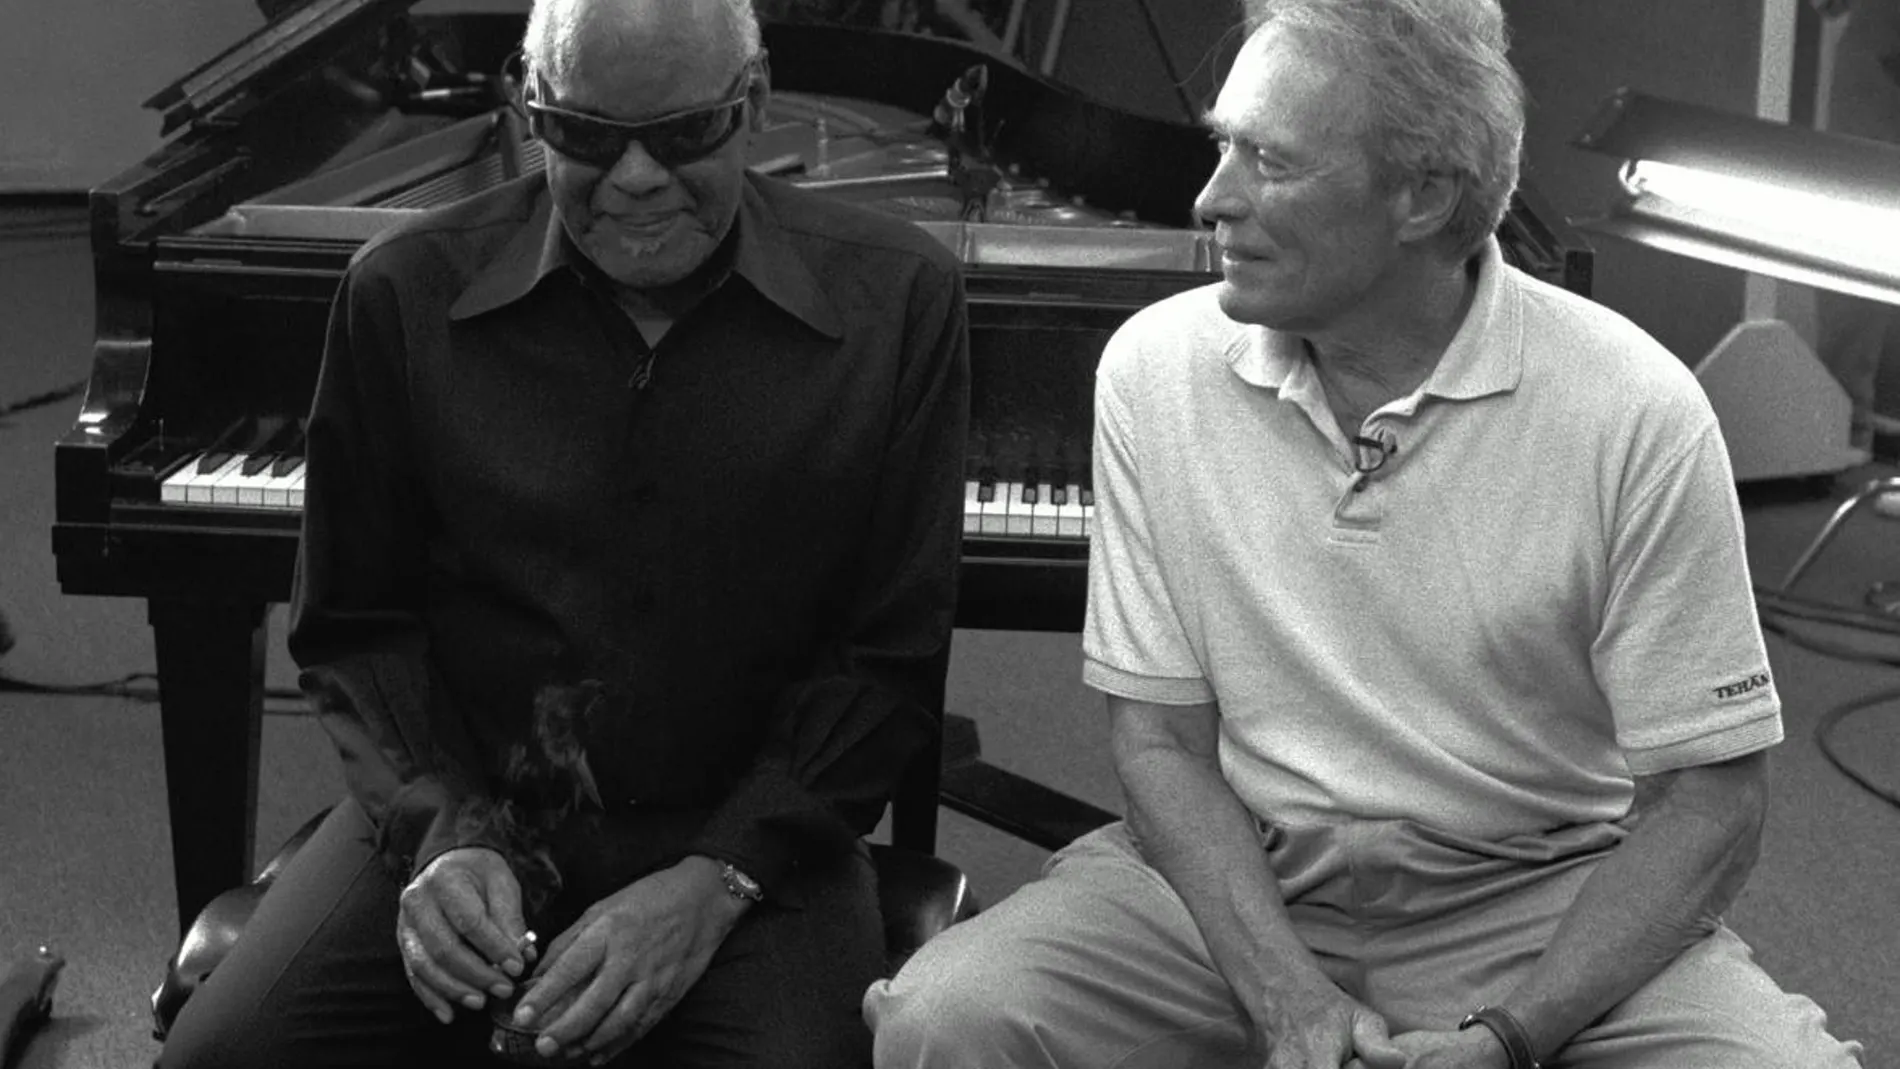 Dos leyendas, Ray Charles y Clint Eastwood